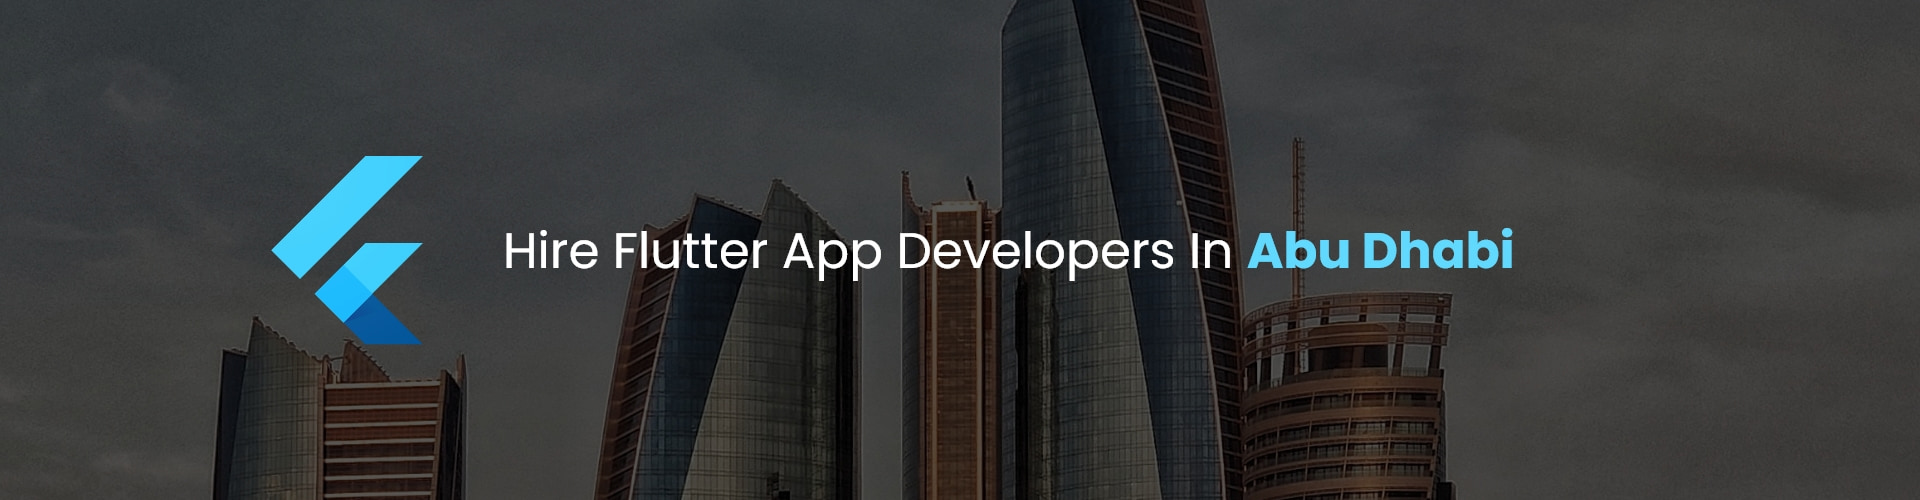 hire flutter app developers in abu dhabi